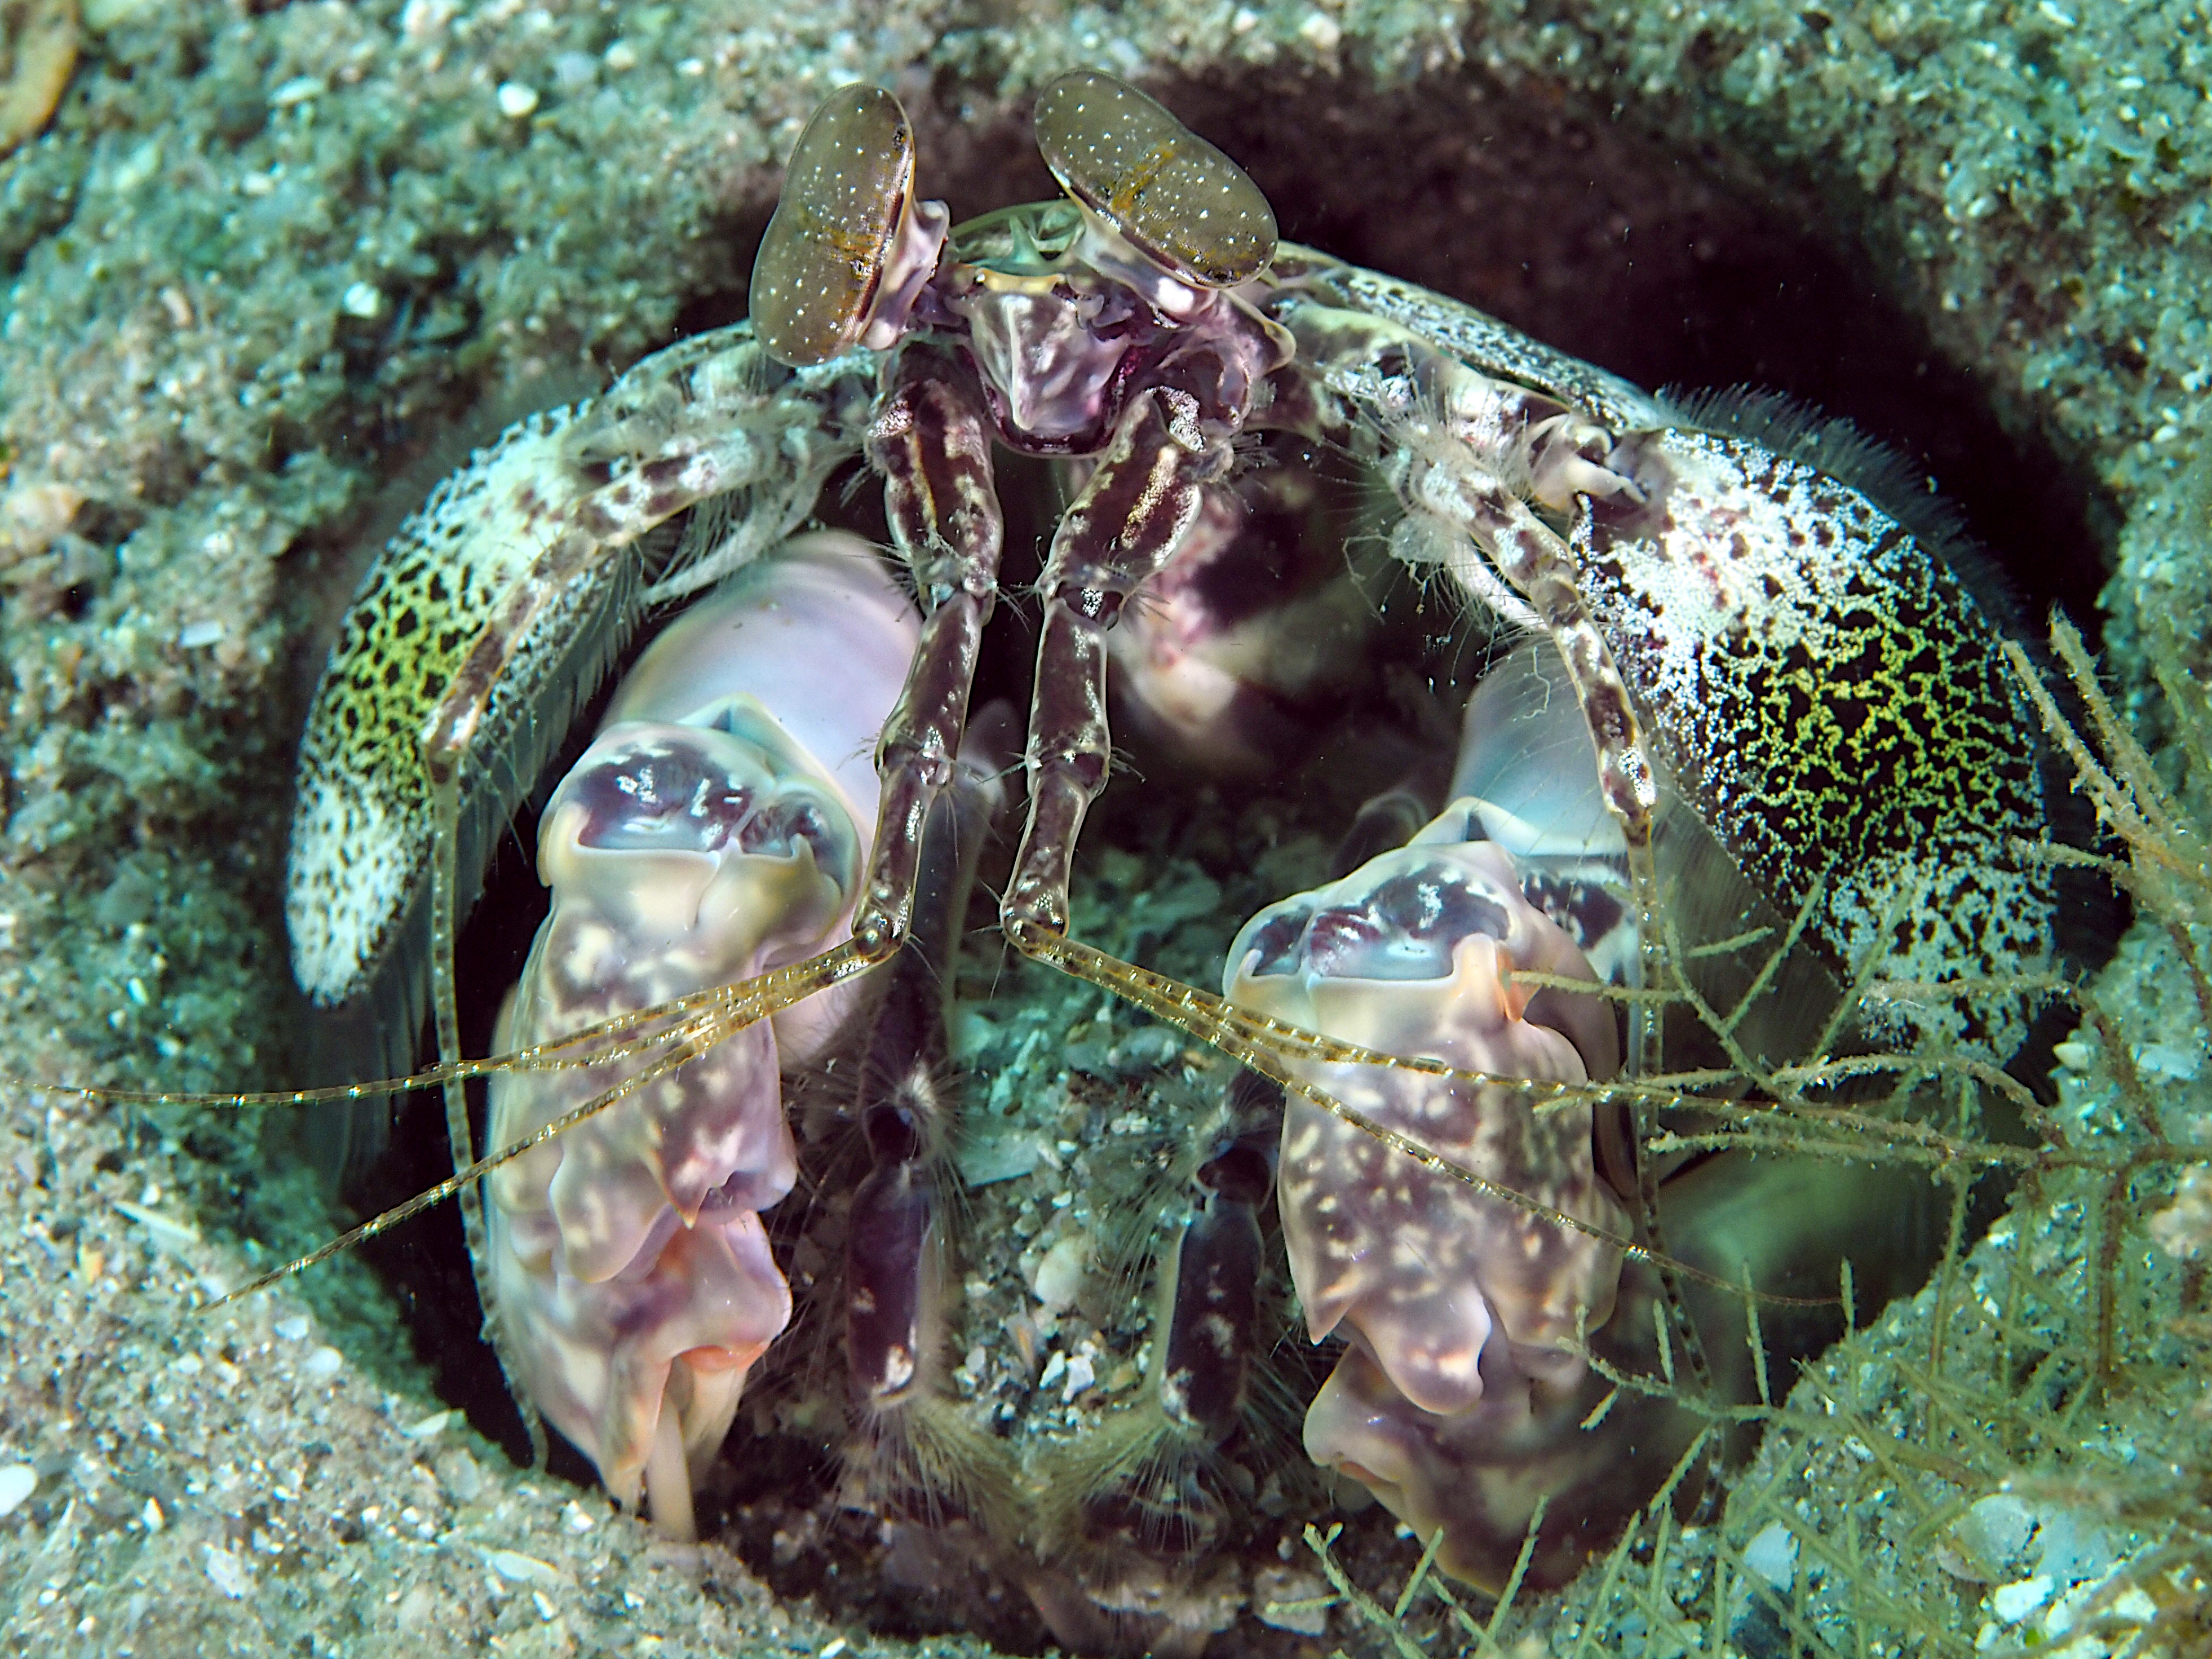 Scaly-Tailed Mantis Shrimp - Lysiosquilla scabricauda